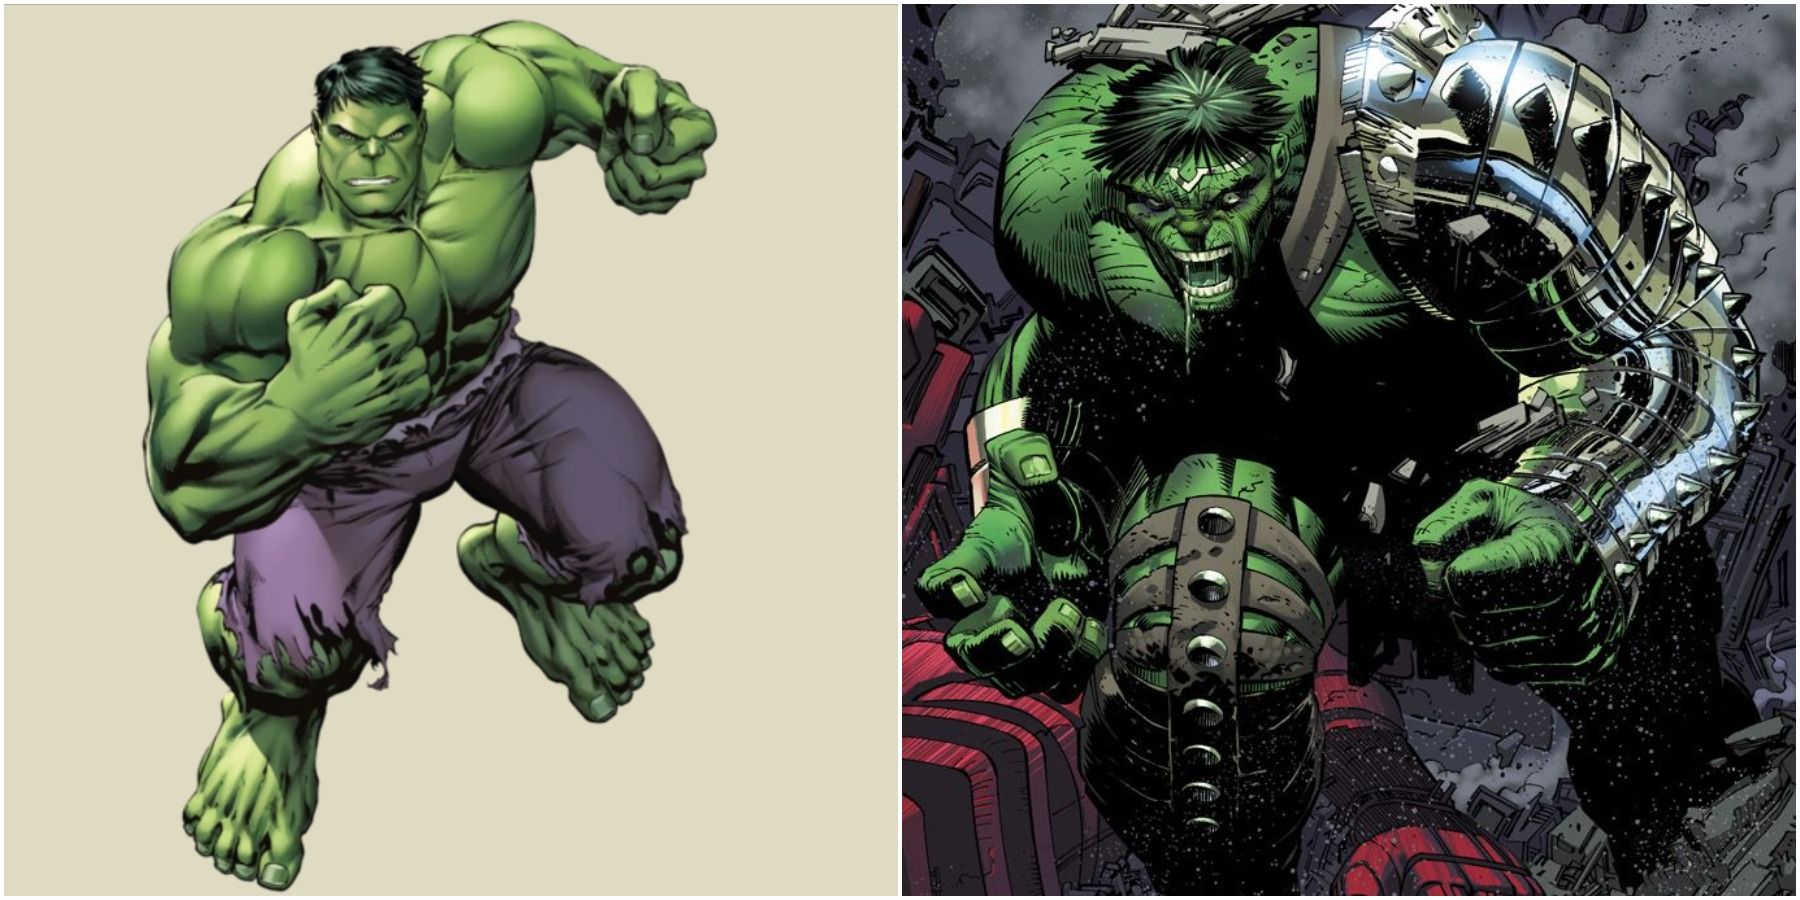 The Hulk World War Hulk Marvel villain